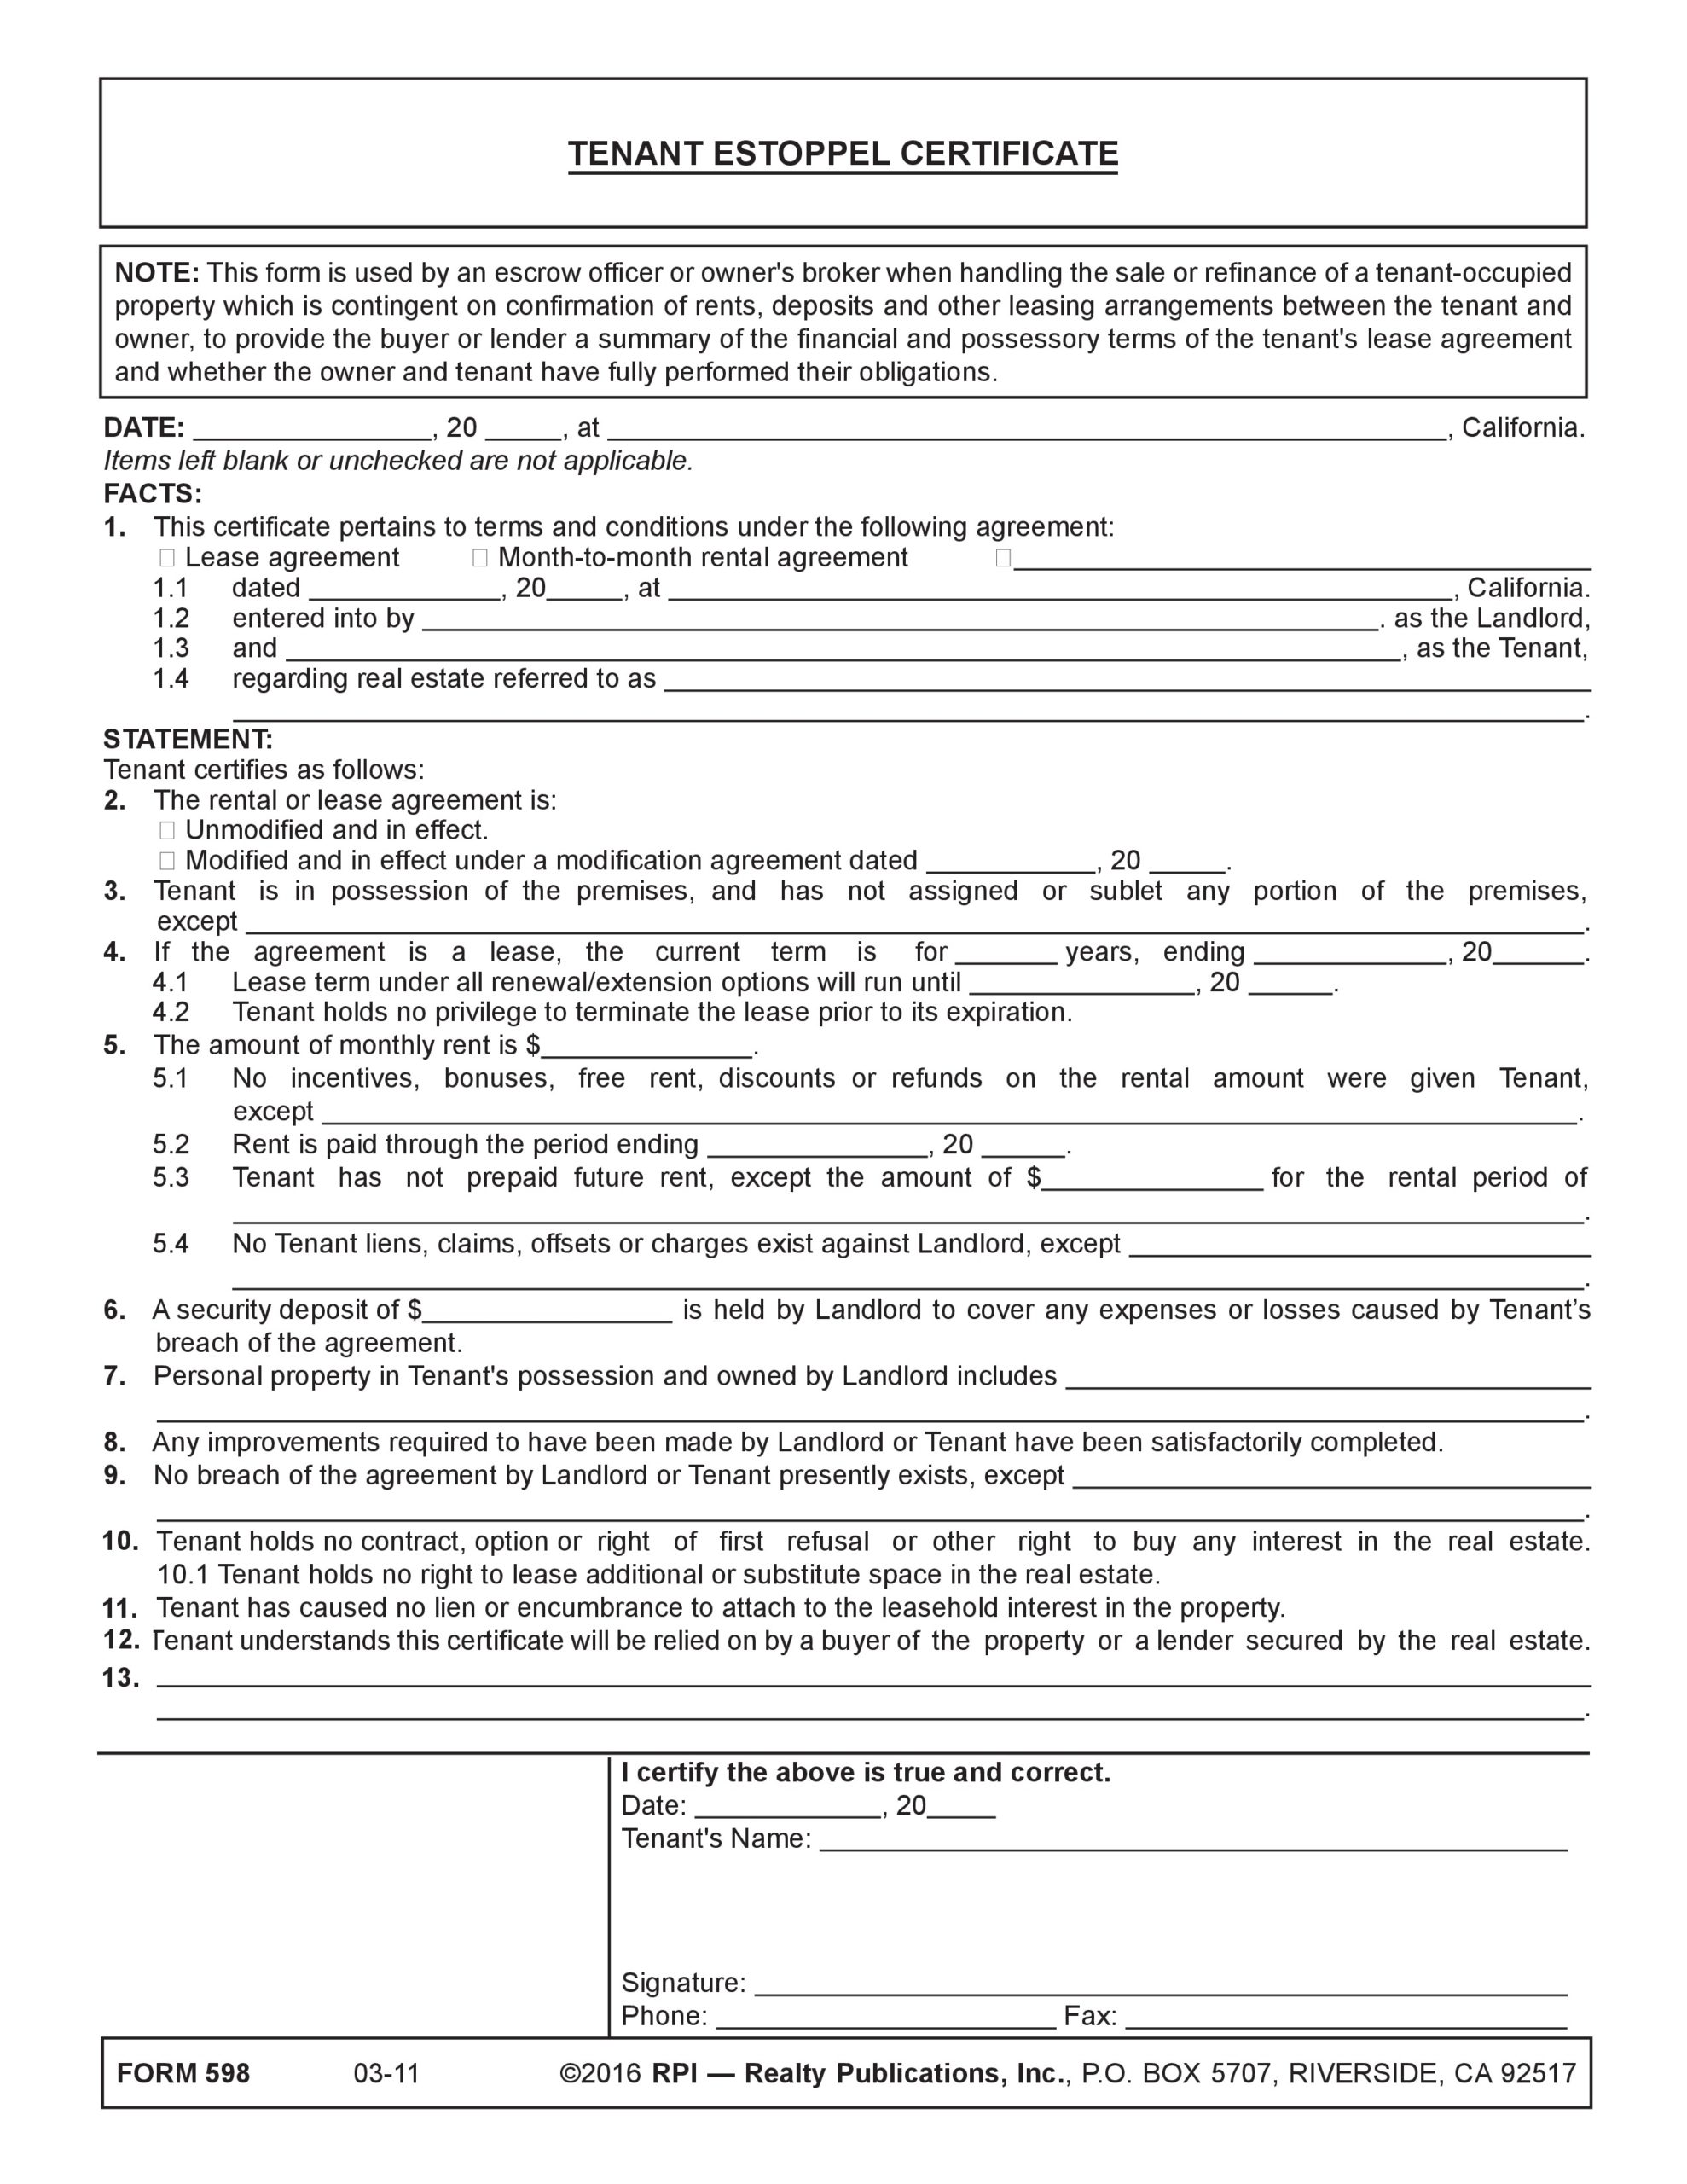 Free estoppel certificate form 07